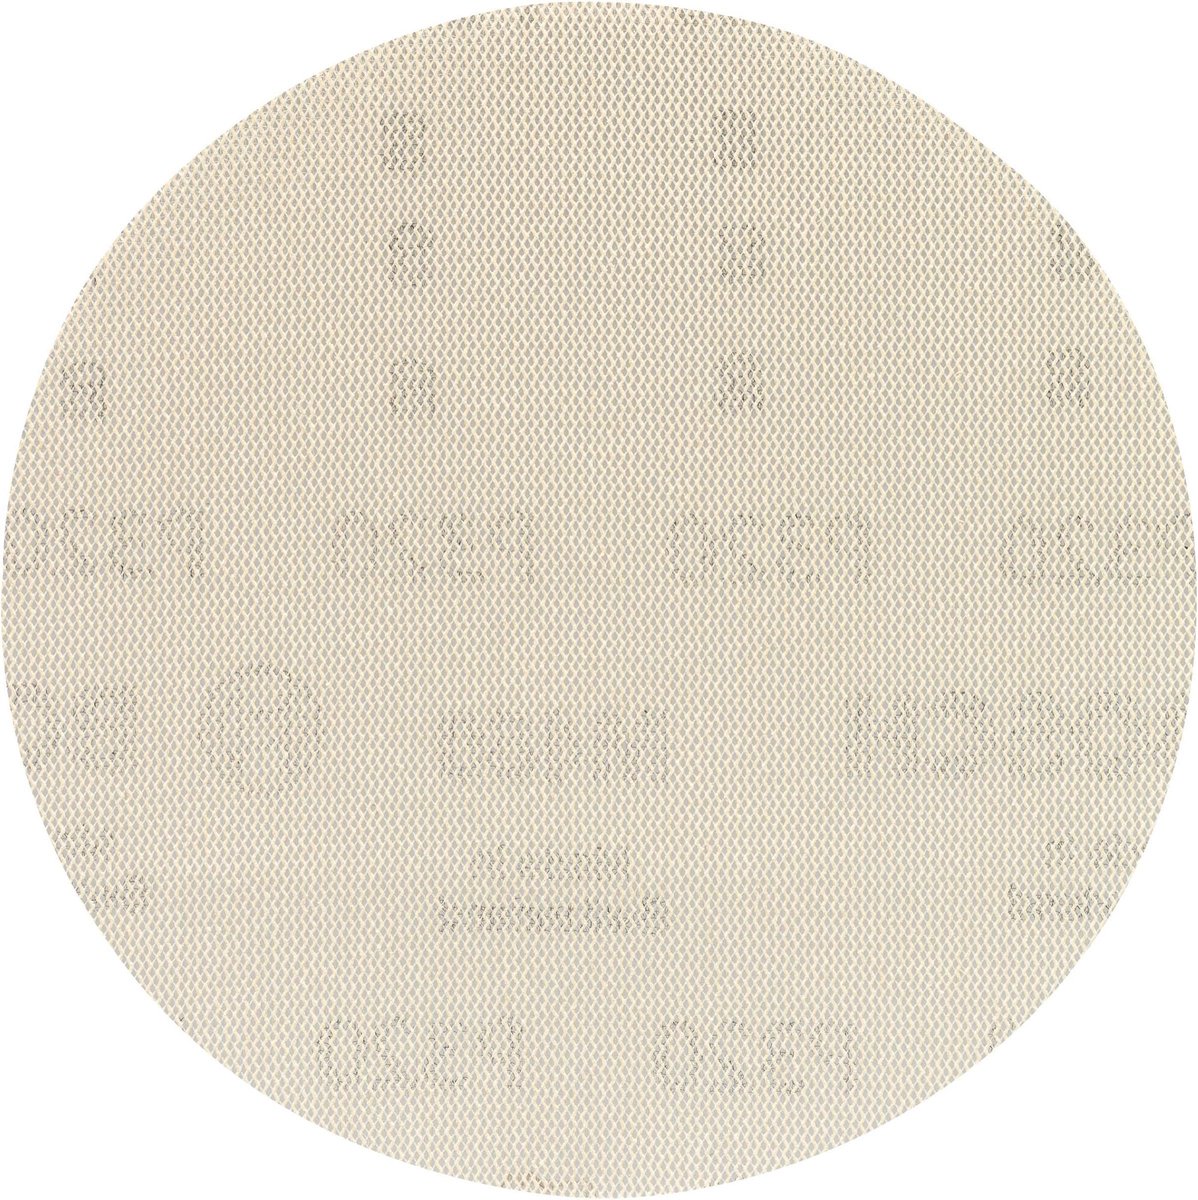 Bosch 2608621151 2608621151 Excenterschuurpapier Korrelgrootte 320 (Ã) 125 mm 5 stuk(s)